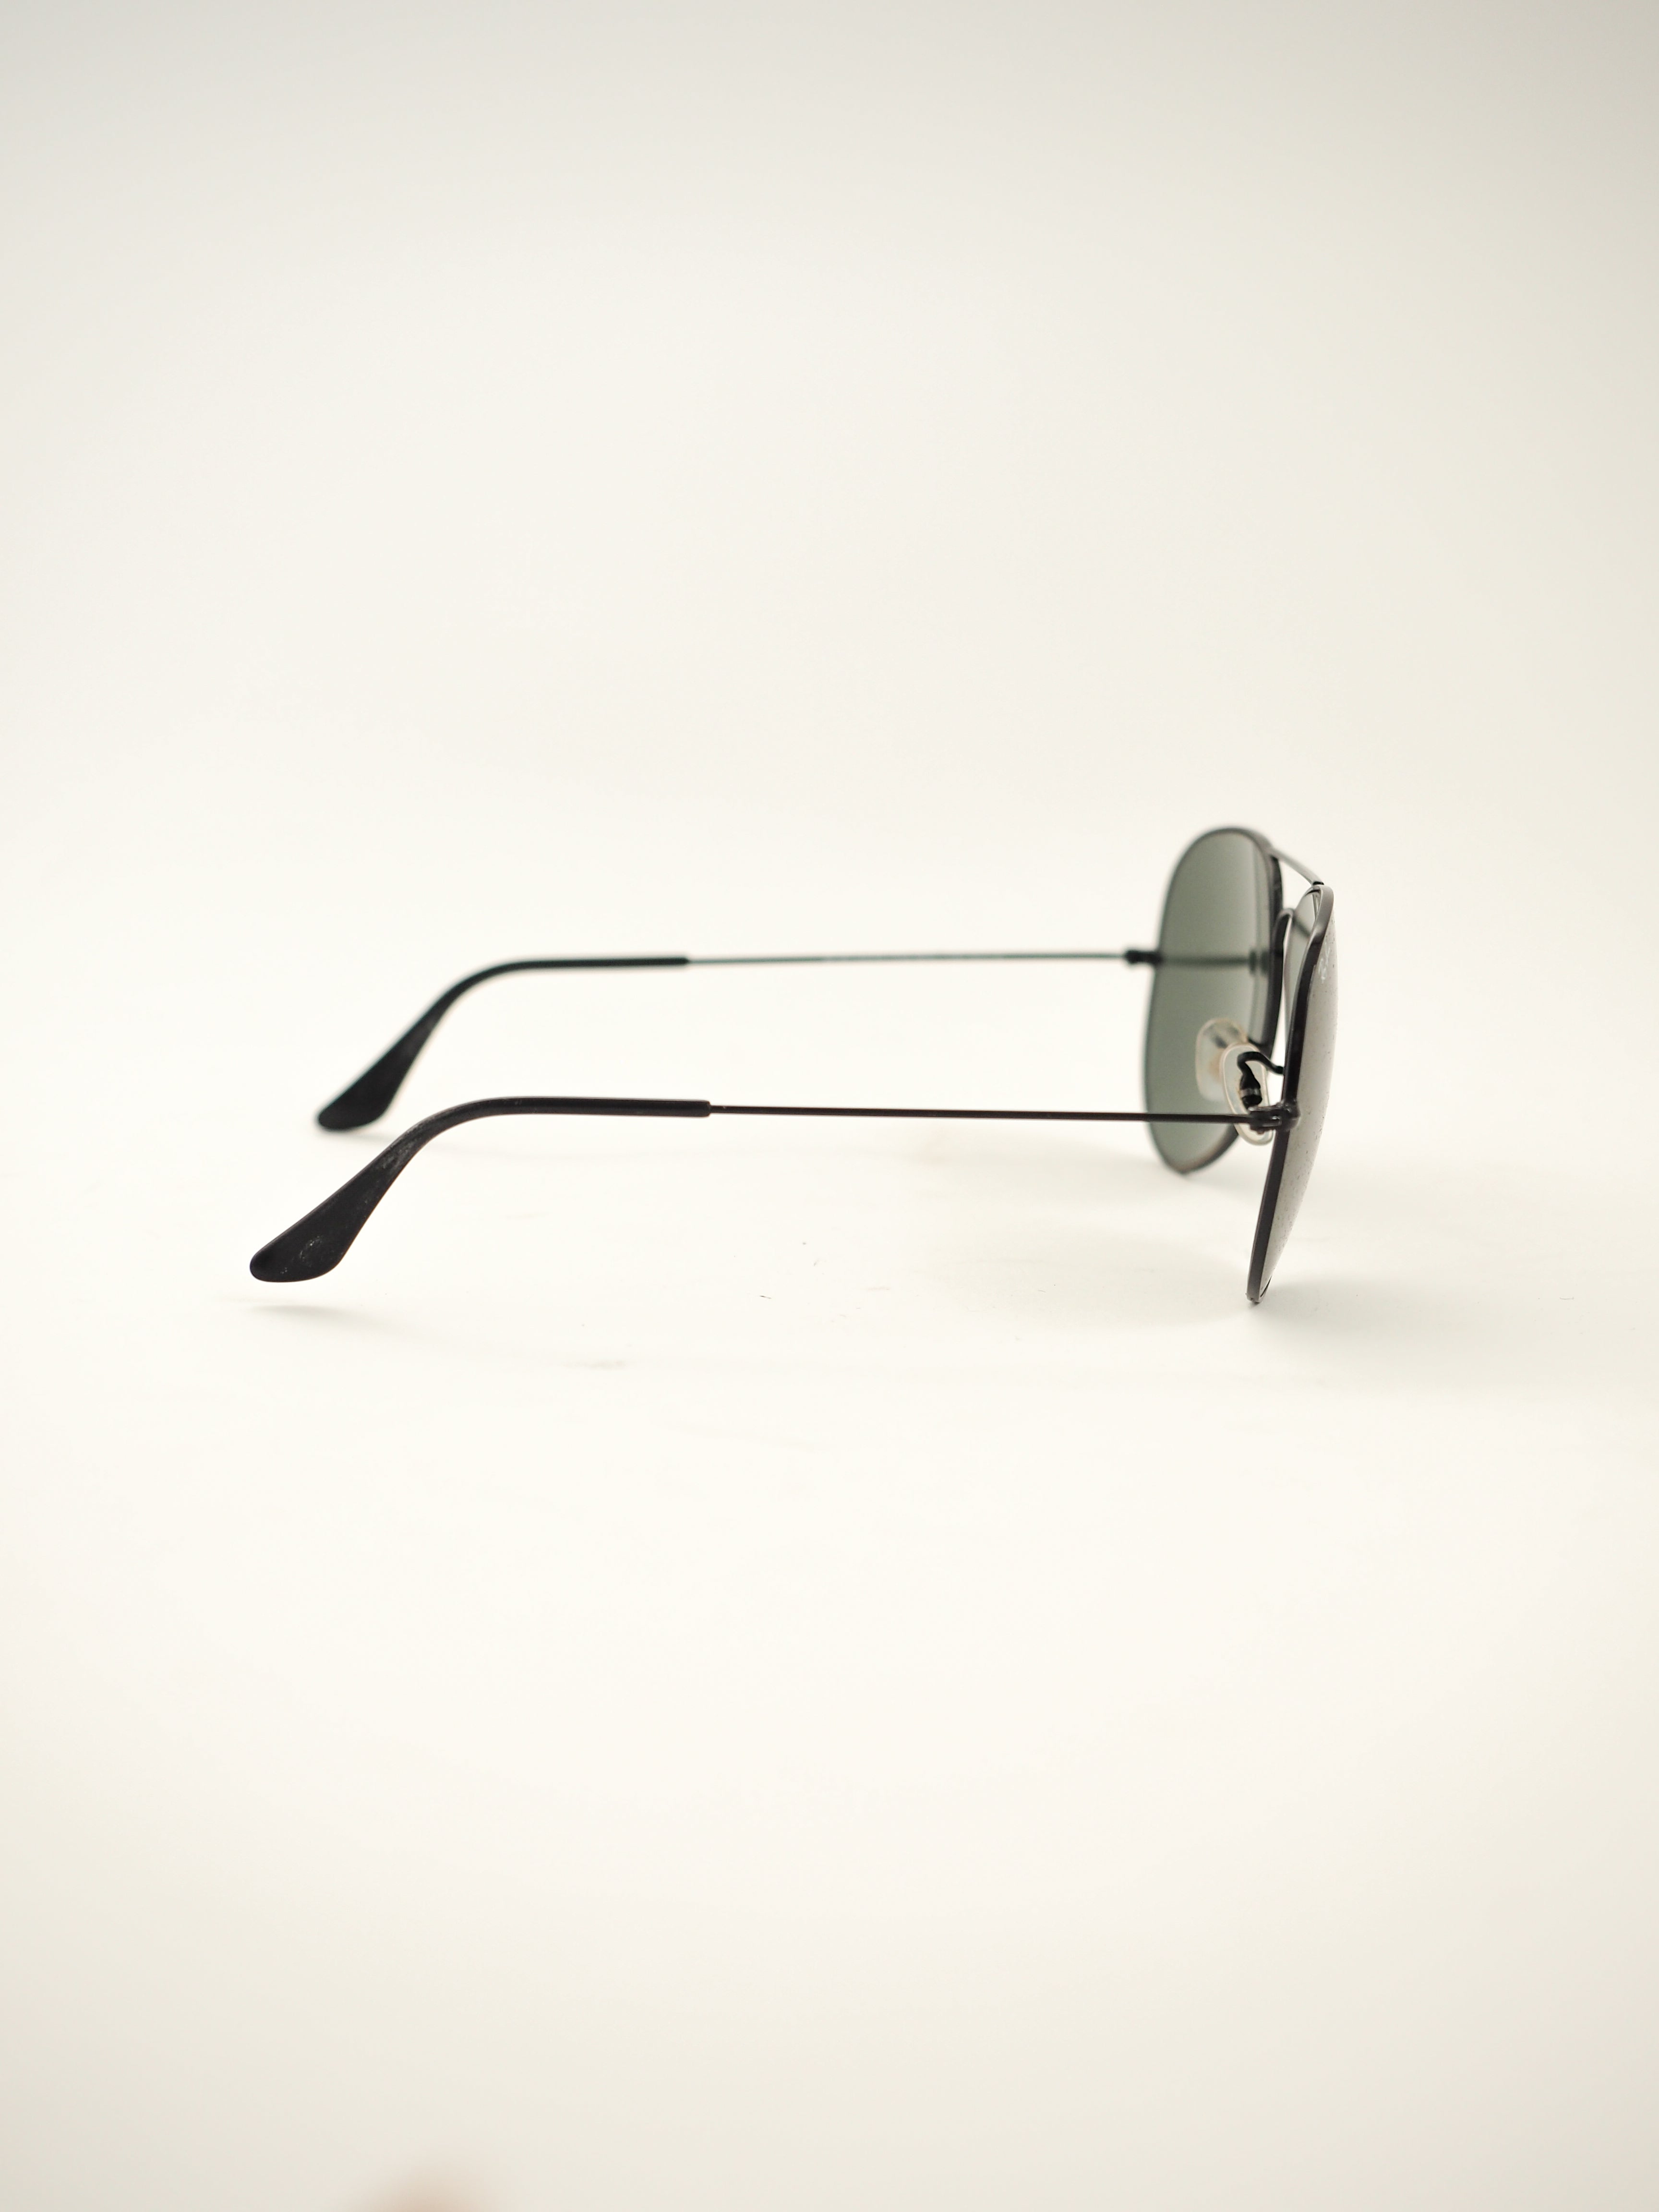 RayBan Aviator Classic Sunglasses